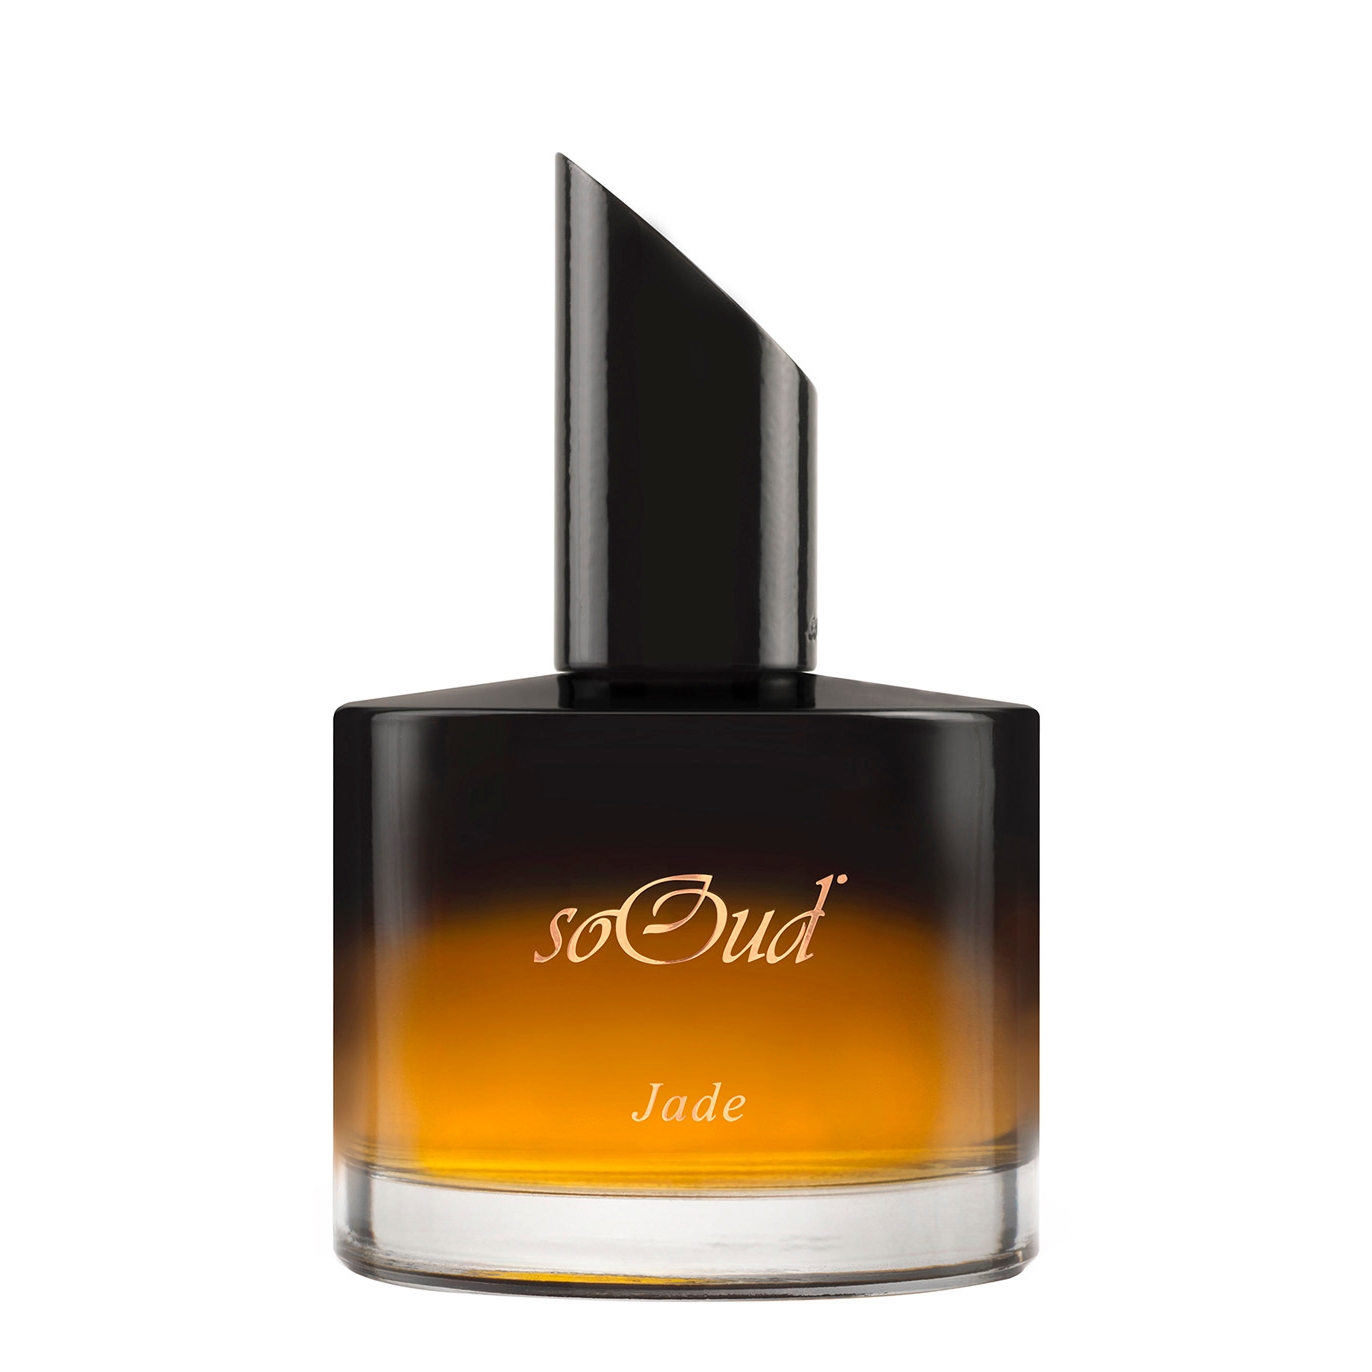 SoOud Jade Eau De Parfum 100ml